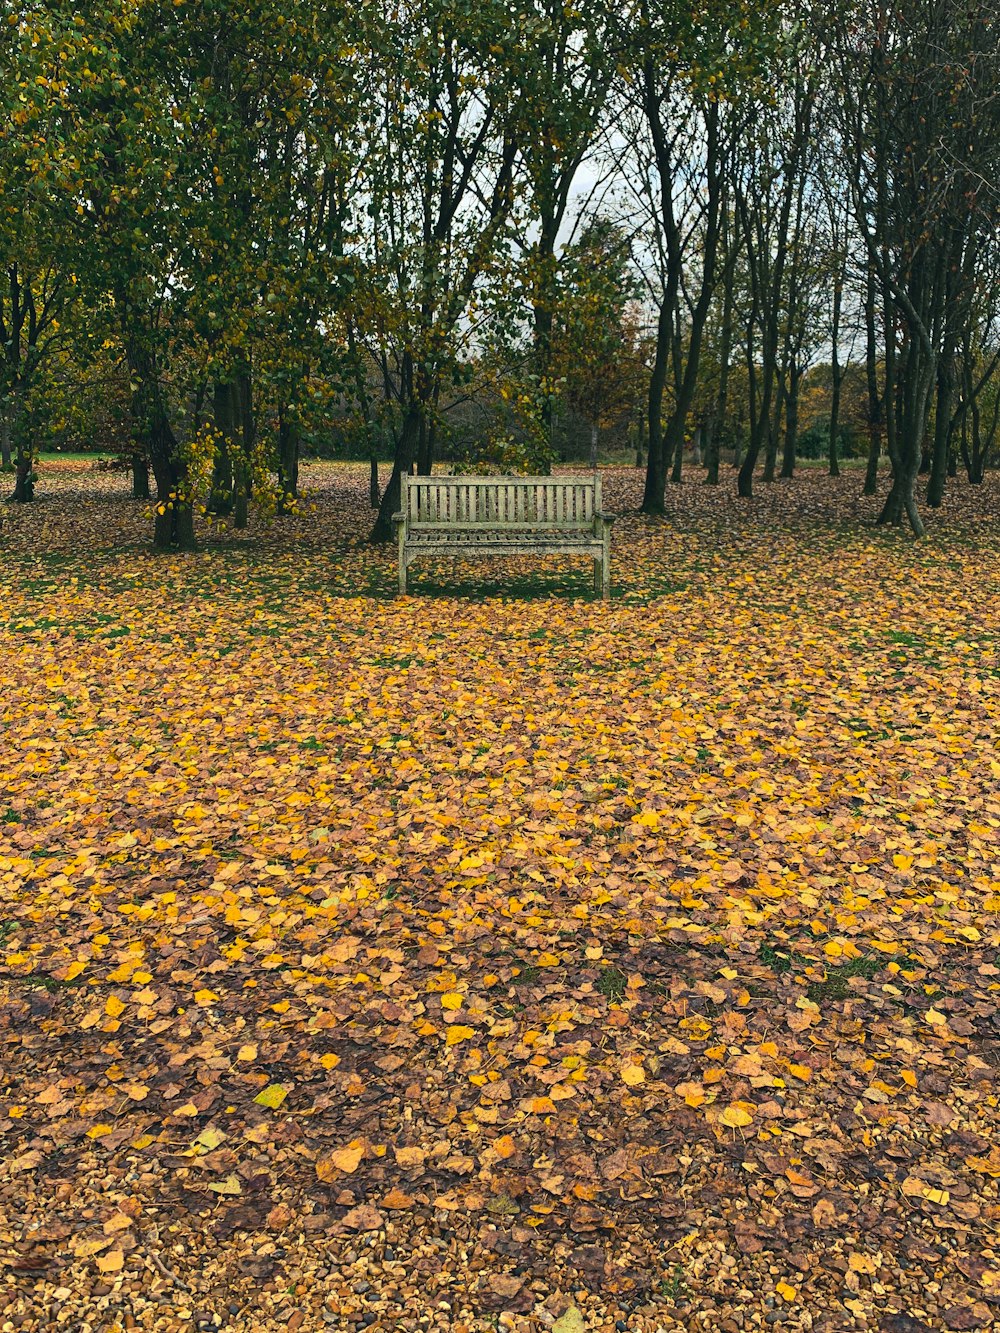 banco de madera marrón sobre hojas secas marrones en el suelo